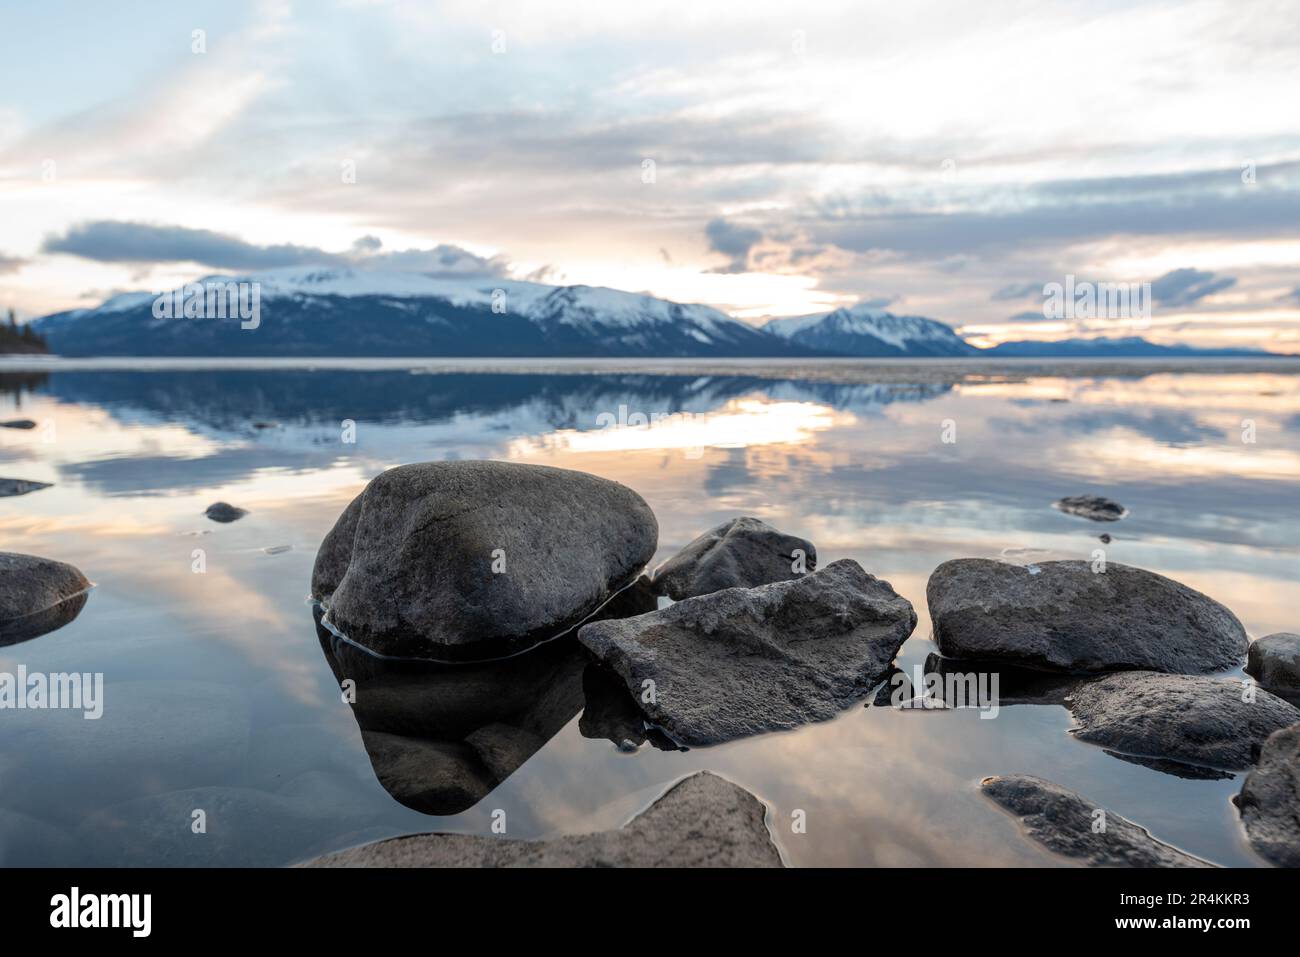 Tramonto roccioso sulla riva del lago ad Atlin, British Columbia durante la primavera. Montagne innevate che si riflettono nella calma acqua del lago sottostante con un cielo spettacolare. Foto Stock